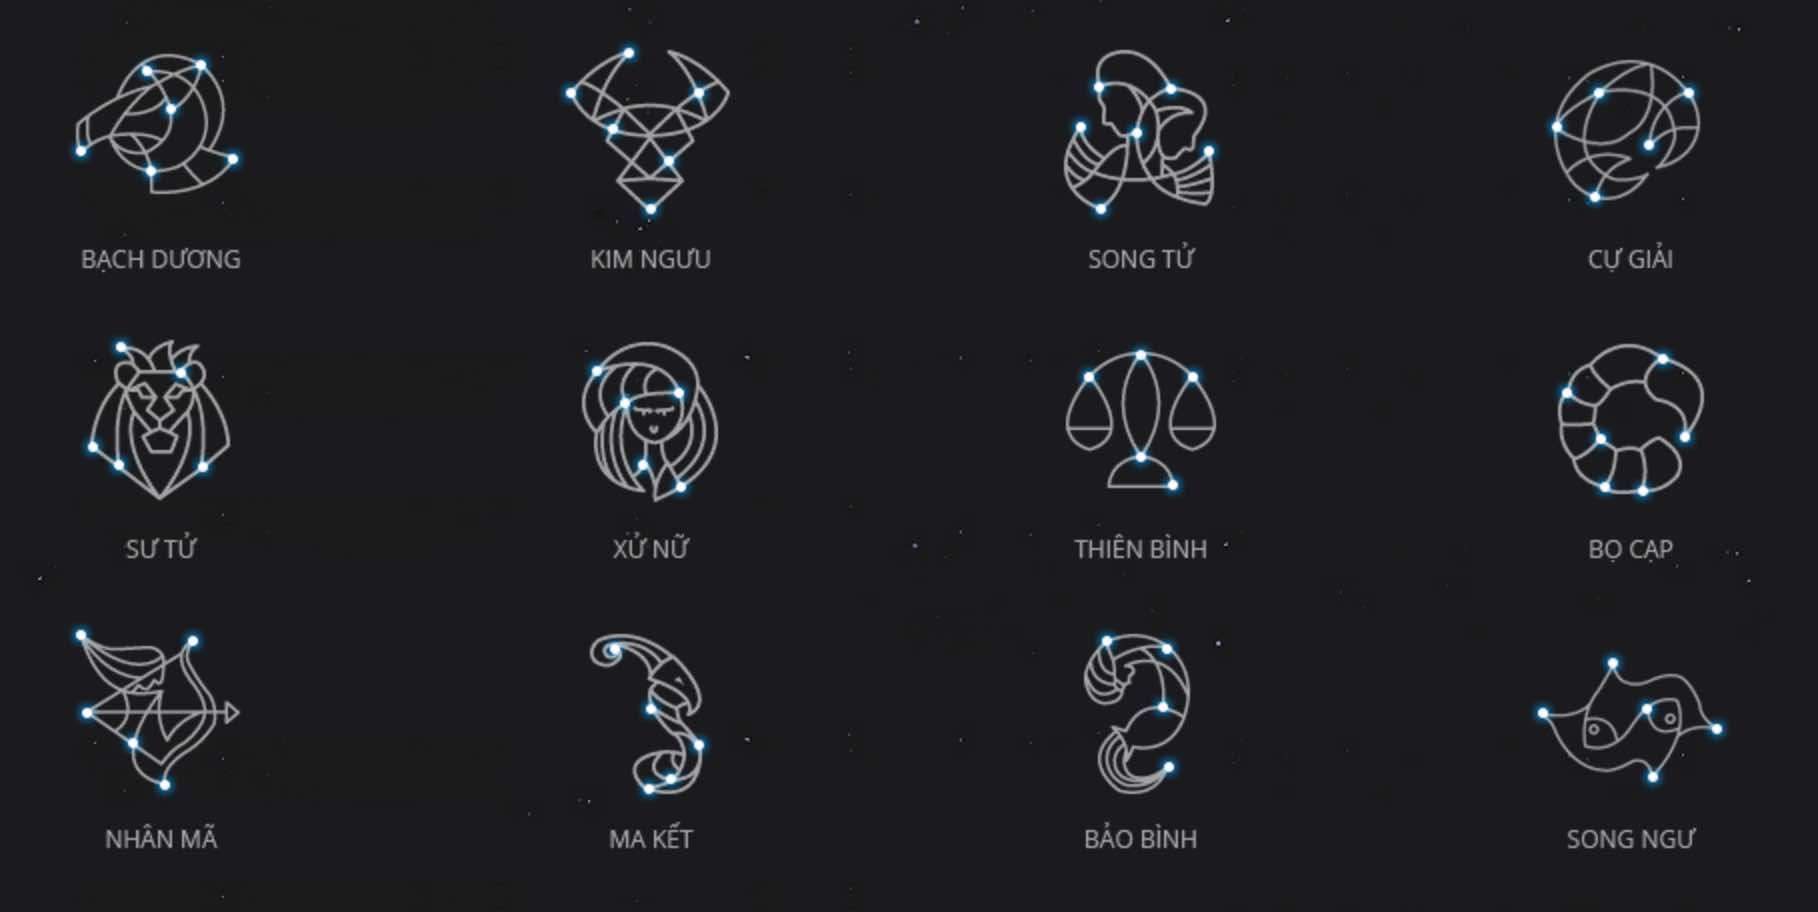 Tử vi mật ngữ 12 chòm sao bí ẩn giải mã